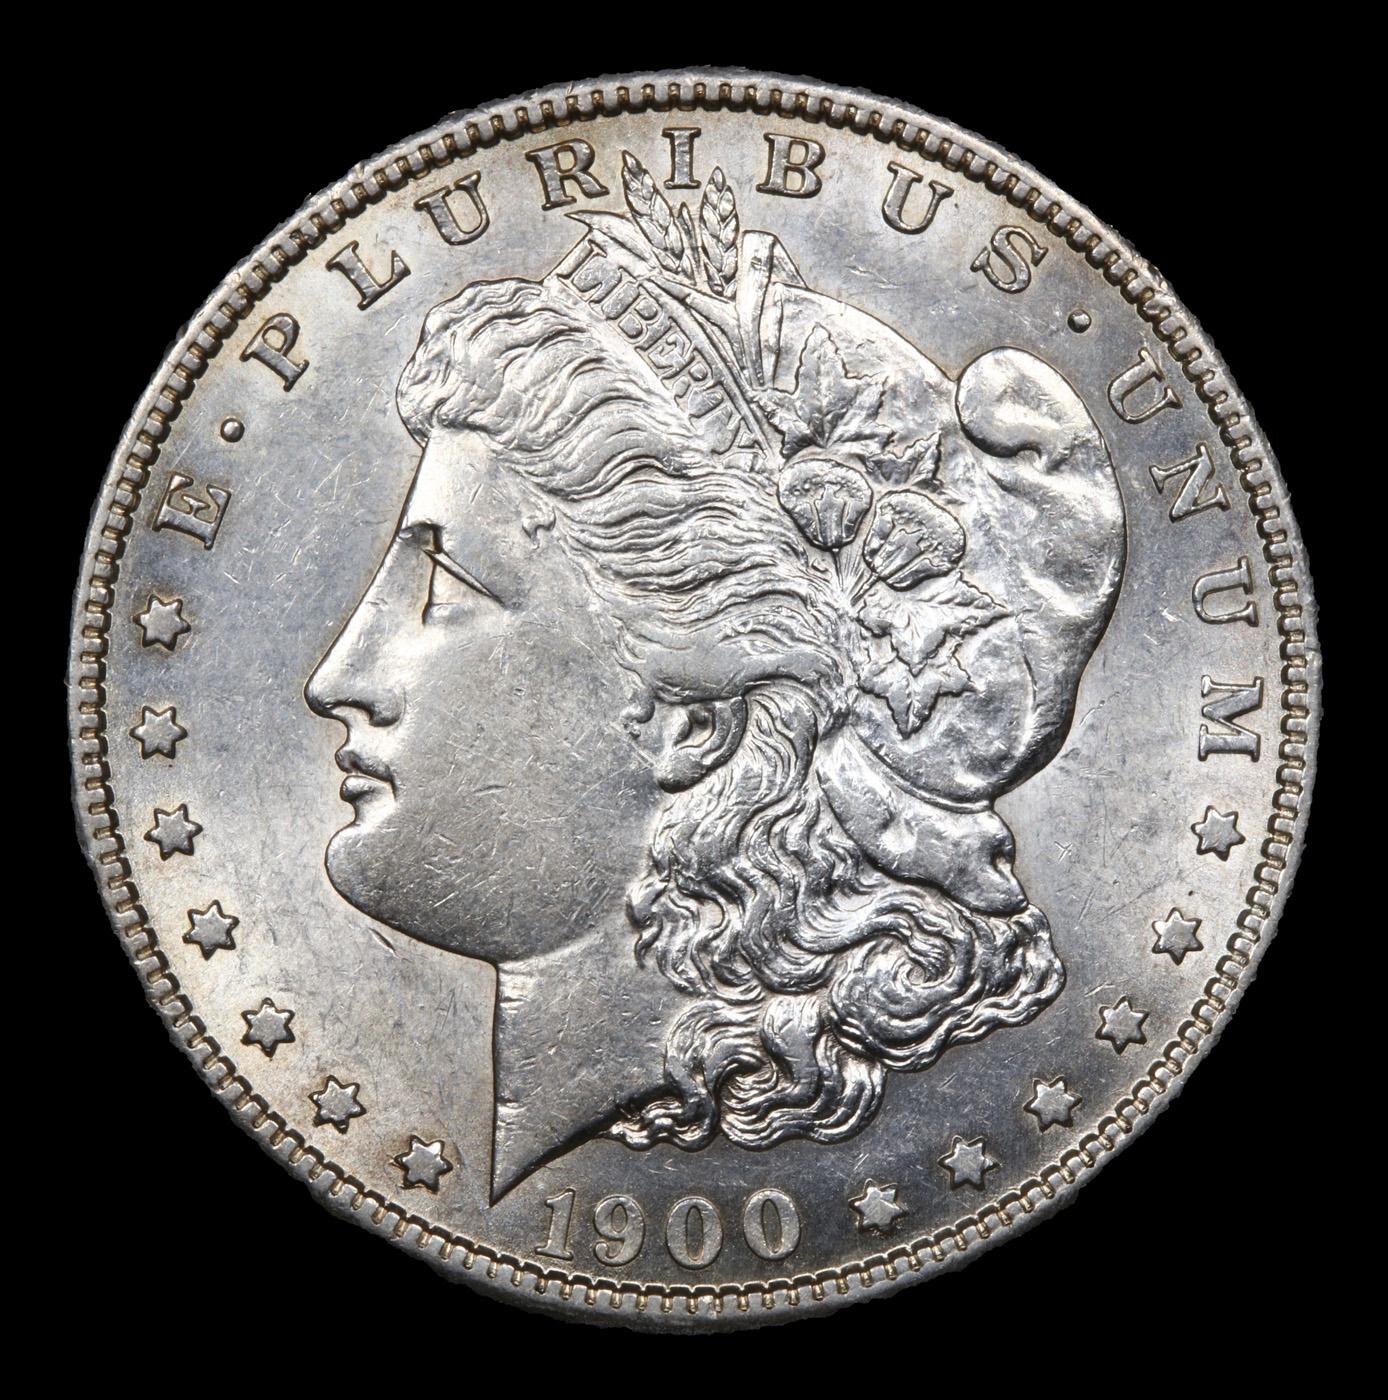 1900-s Morgan Dollar $1 Grades Select Unc